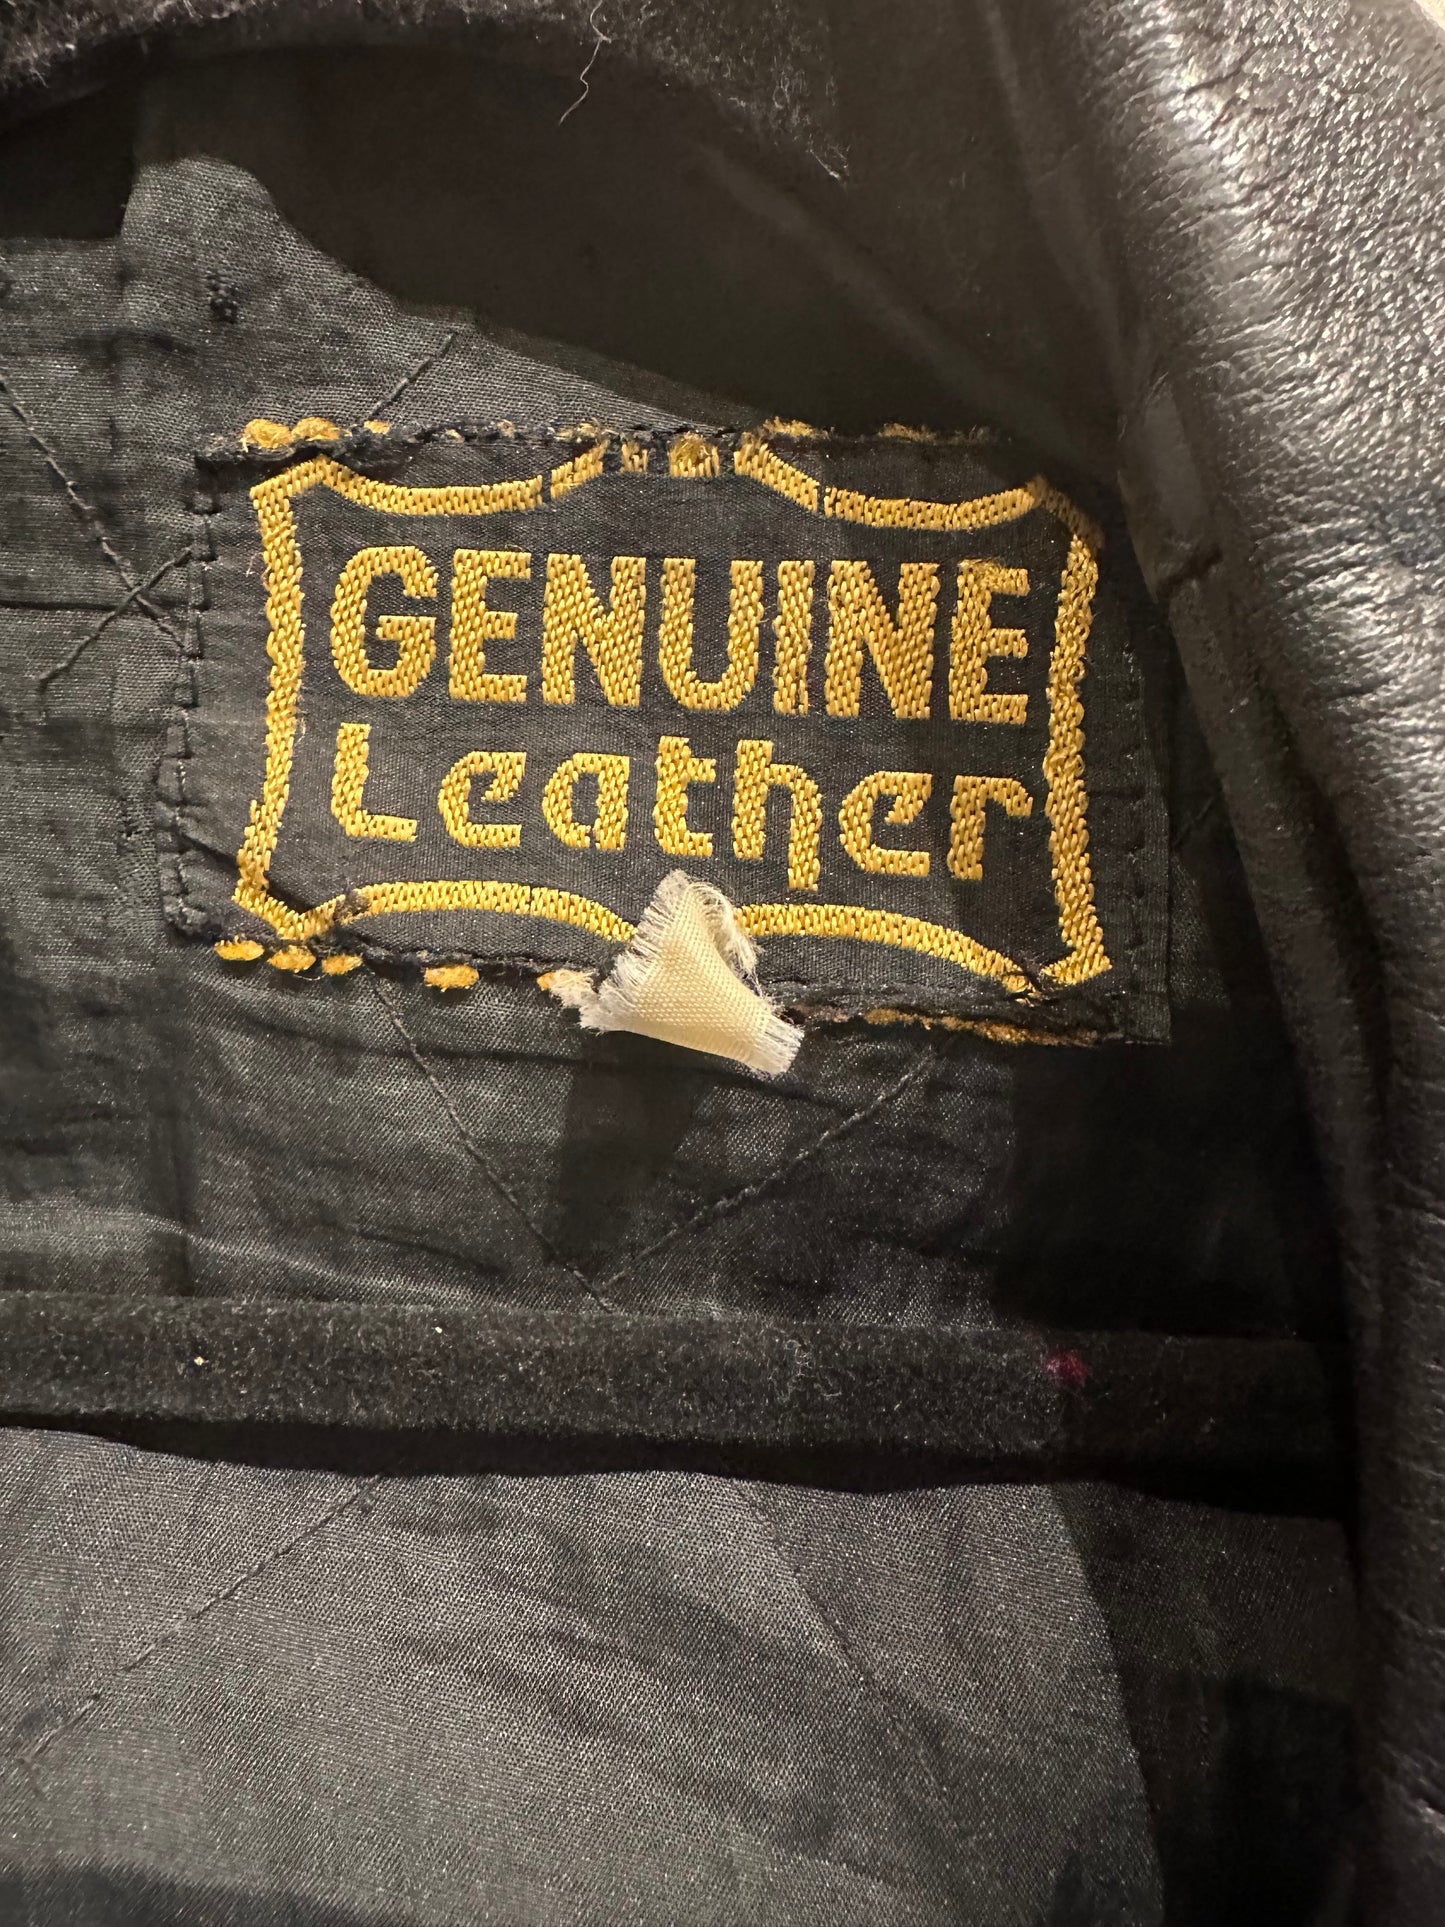 90s 'Genuine Leather' Heavy Duty Leather Moto Jacket / Large